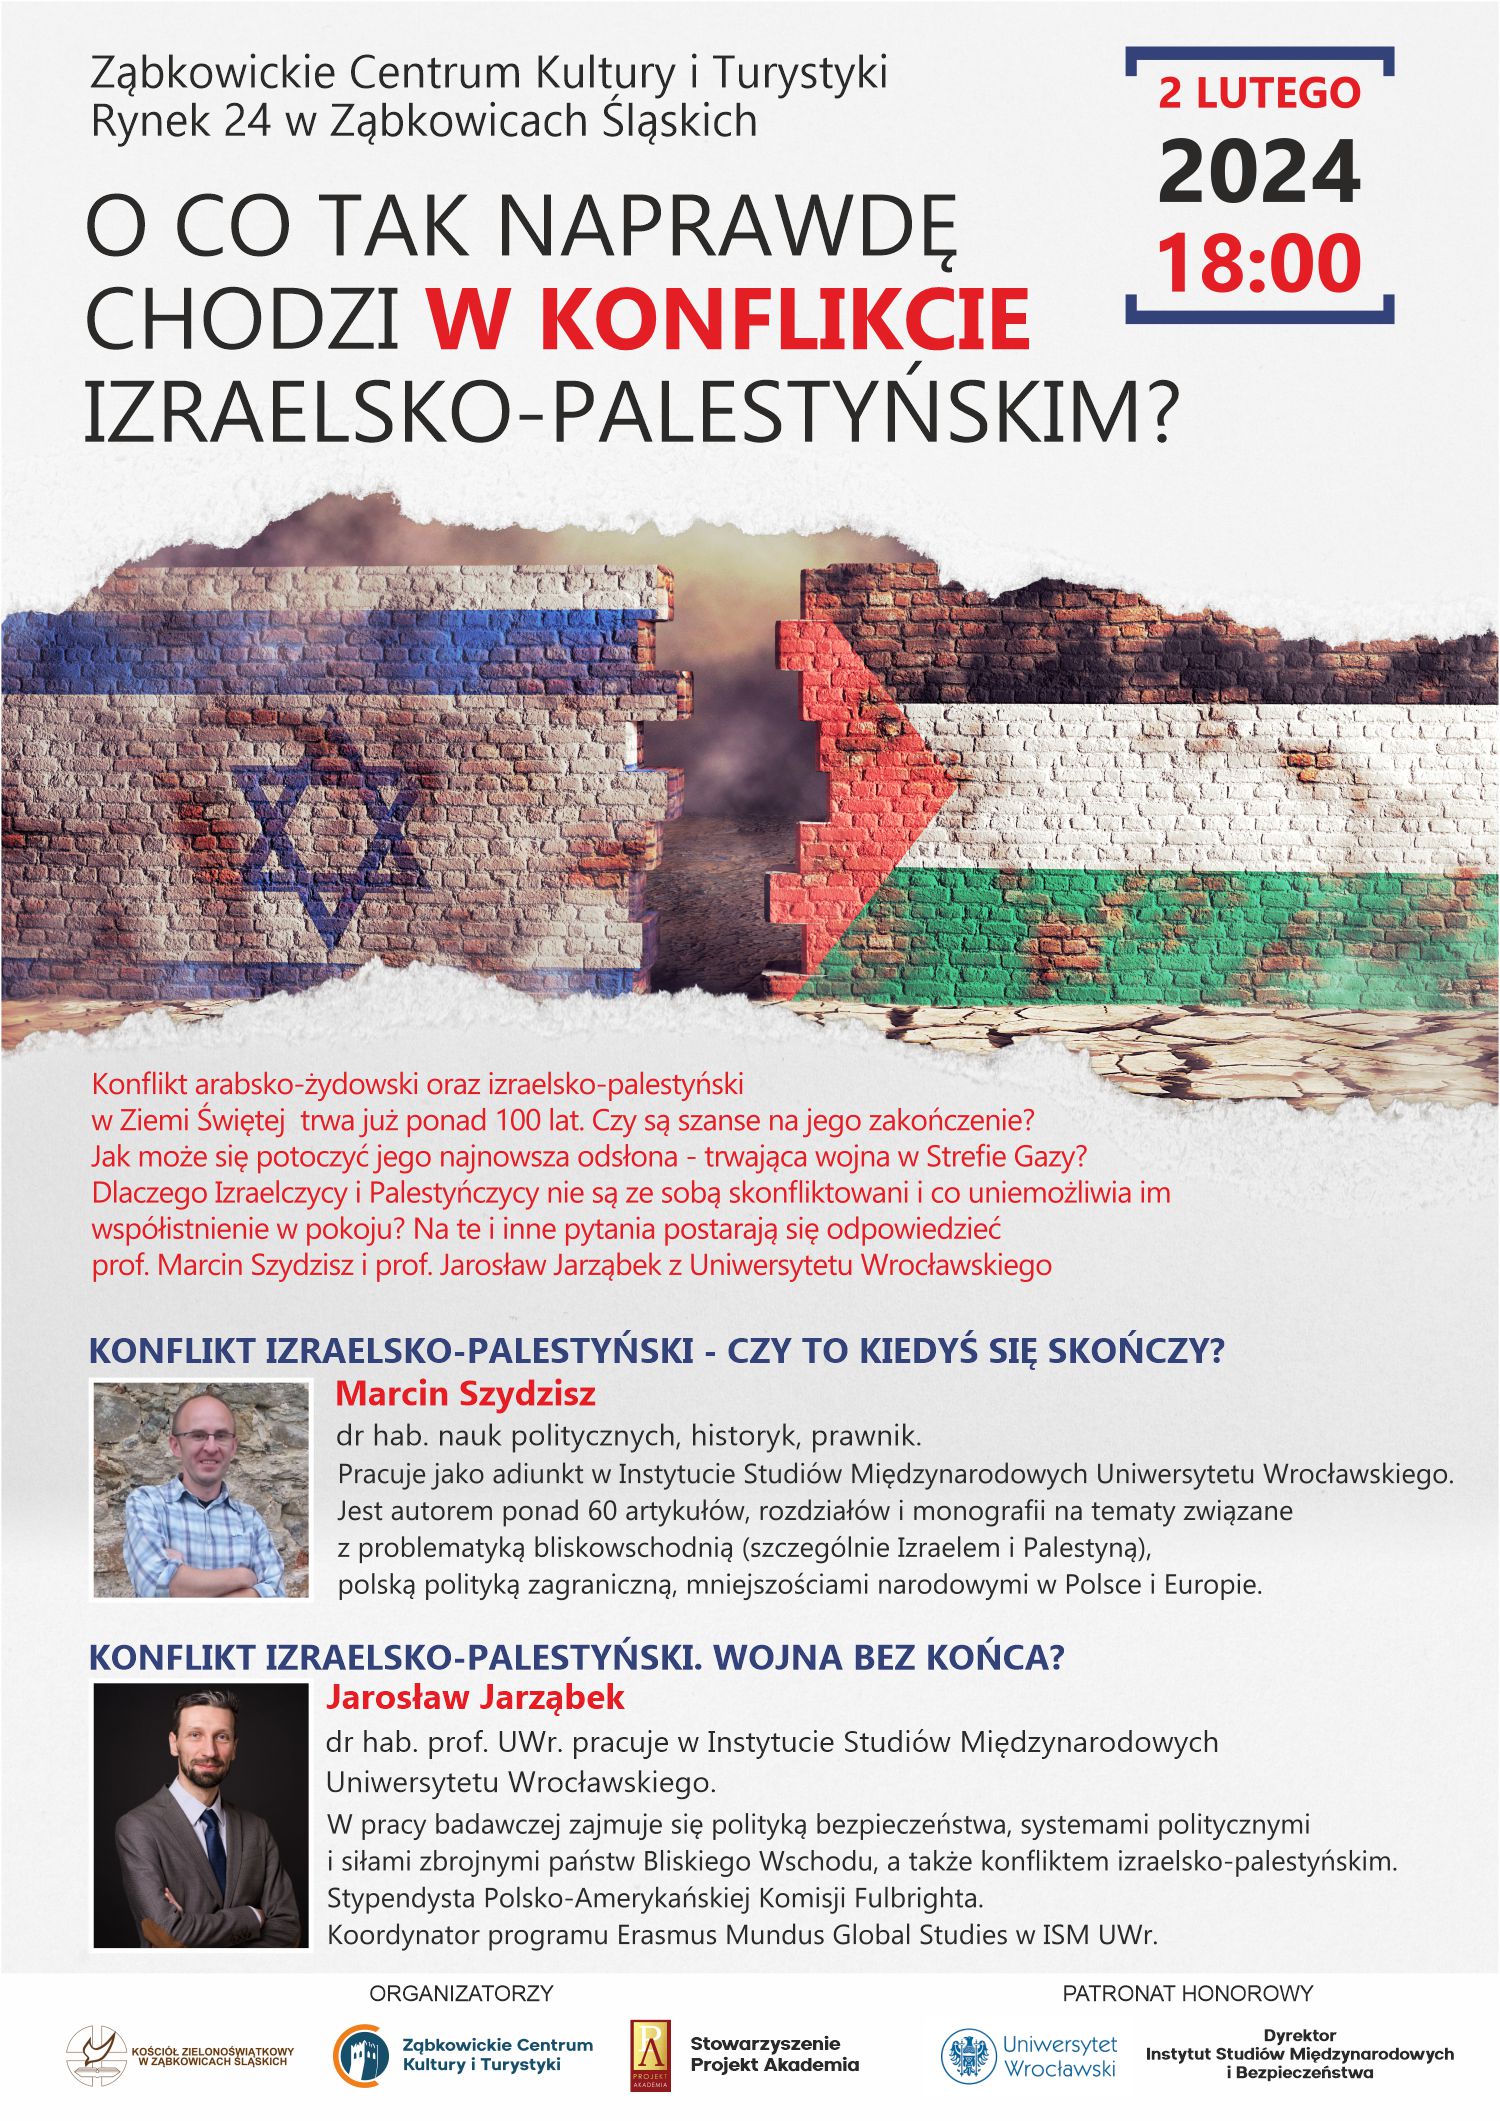 Plakat informacyjny o spotkaniu "O co tak naprawdę chodzi w konflikcie izraelsko-palestyńskim?" z Marcinem Szydziszem i Jarosławem Jarząbkiem, 2 lutego 2024 o godzinie 18:00. Na plakacie rozdarty mur z flagami Izraela i Palestyny.